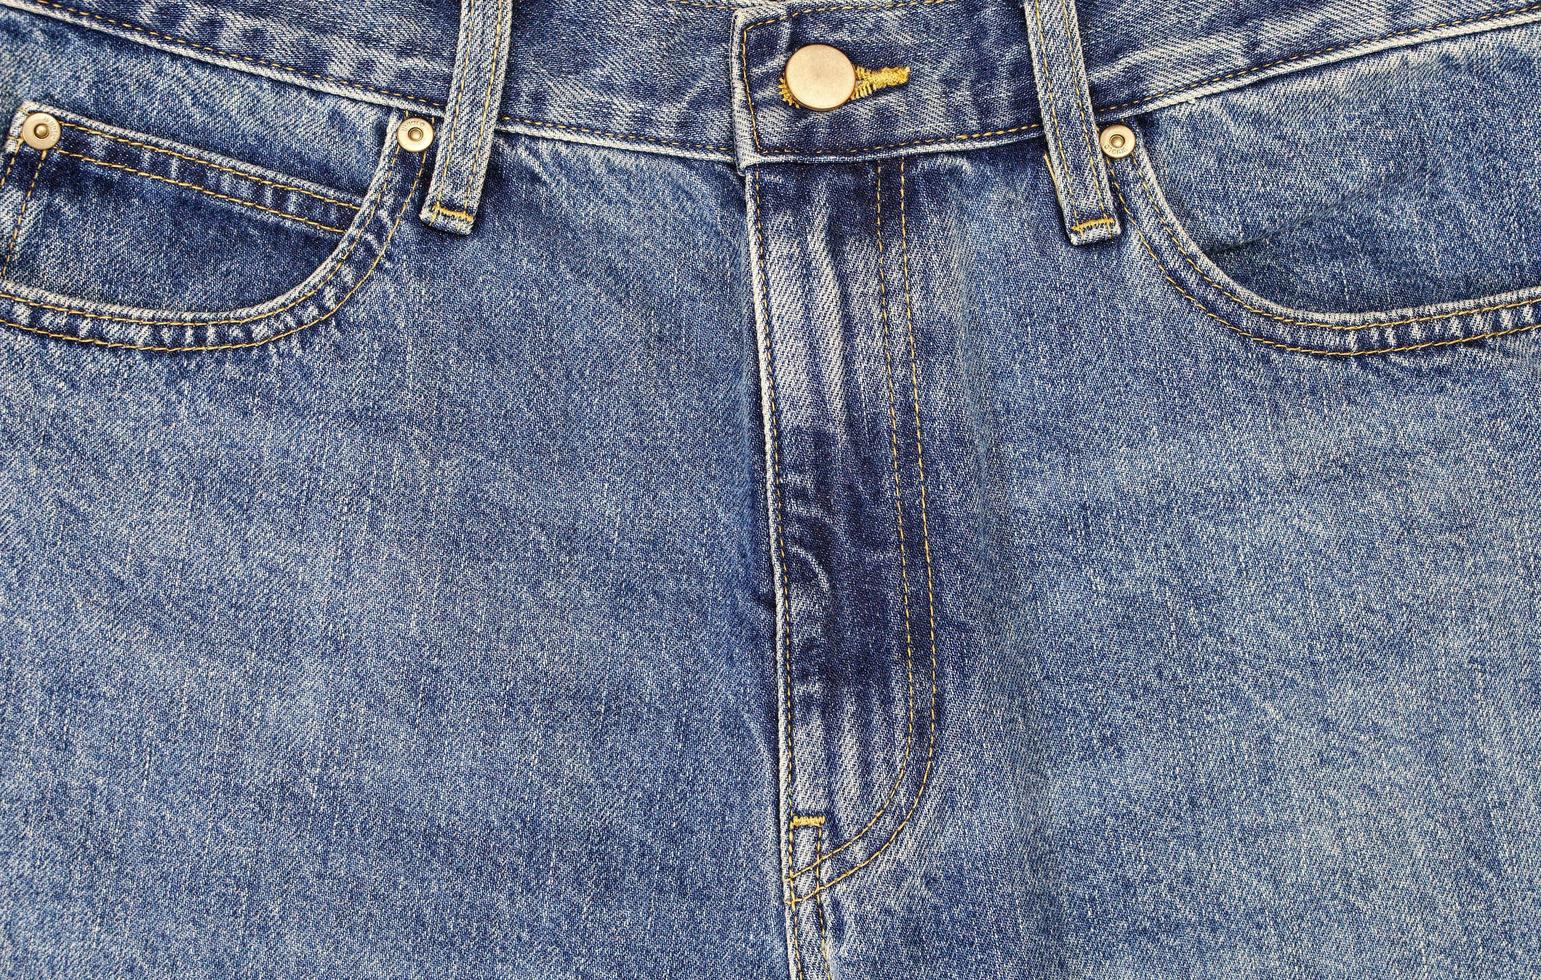 Blau Denim Textur und Jeans Hintergrund, Jeans Stoff Marine Blau abstrakt Hintergründe, die Vorderseite von das Hose hat ein Center Postleitzahl und zwei Seite Taschen. foto